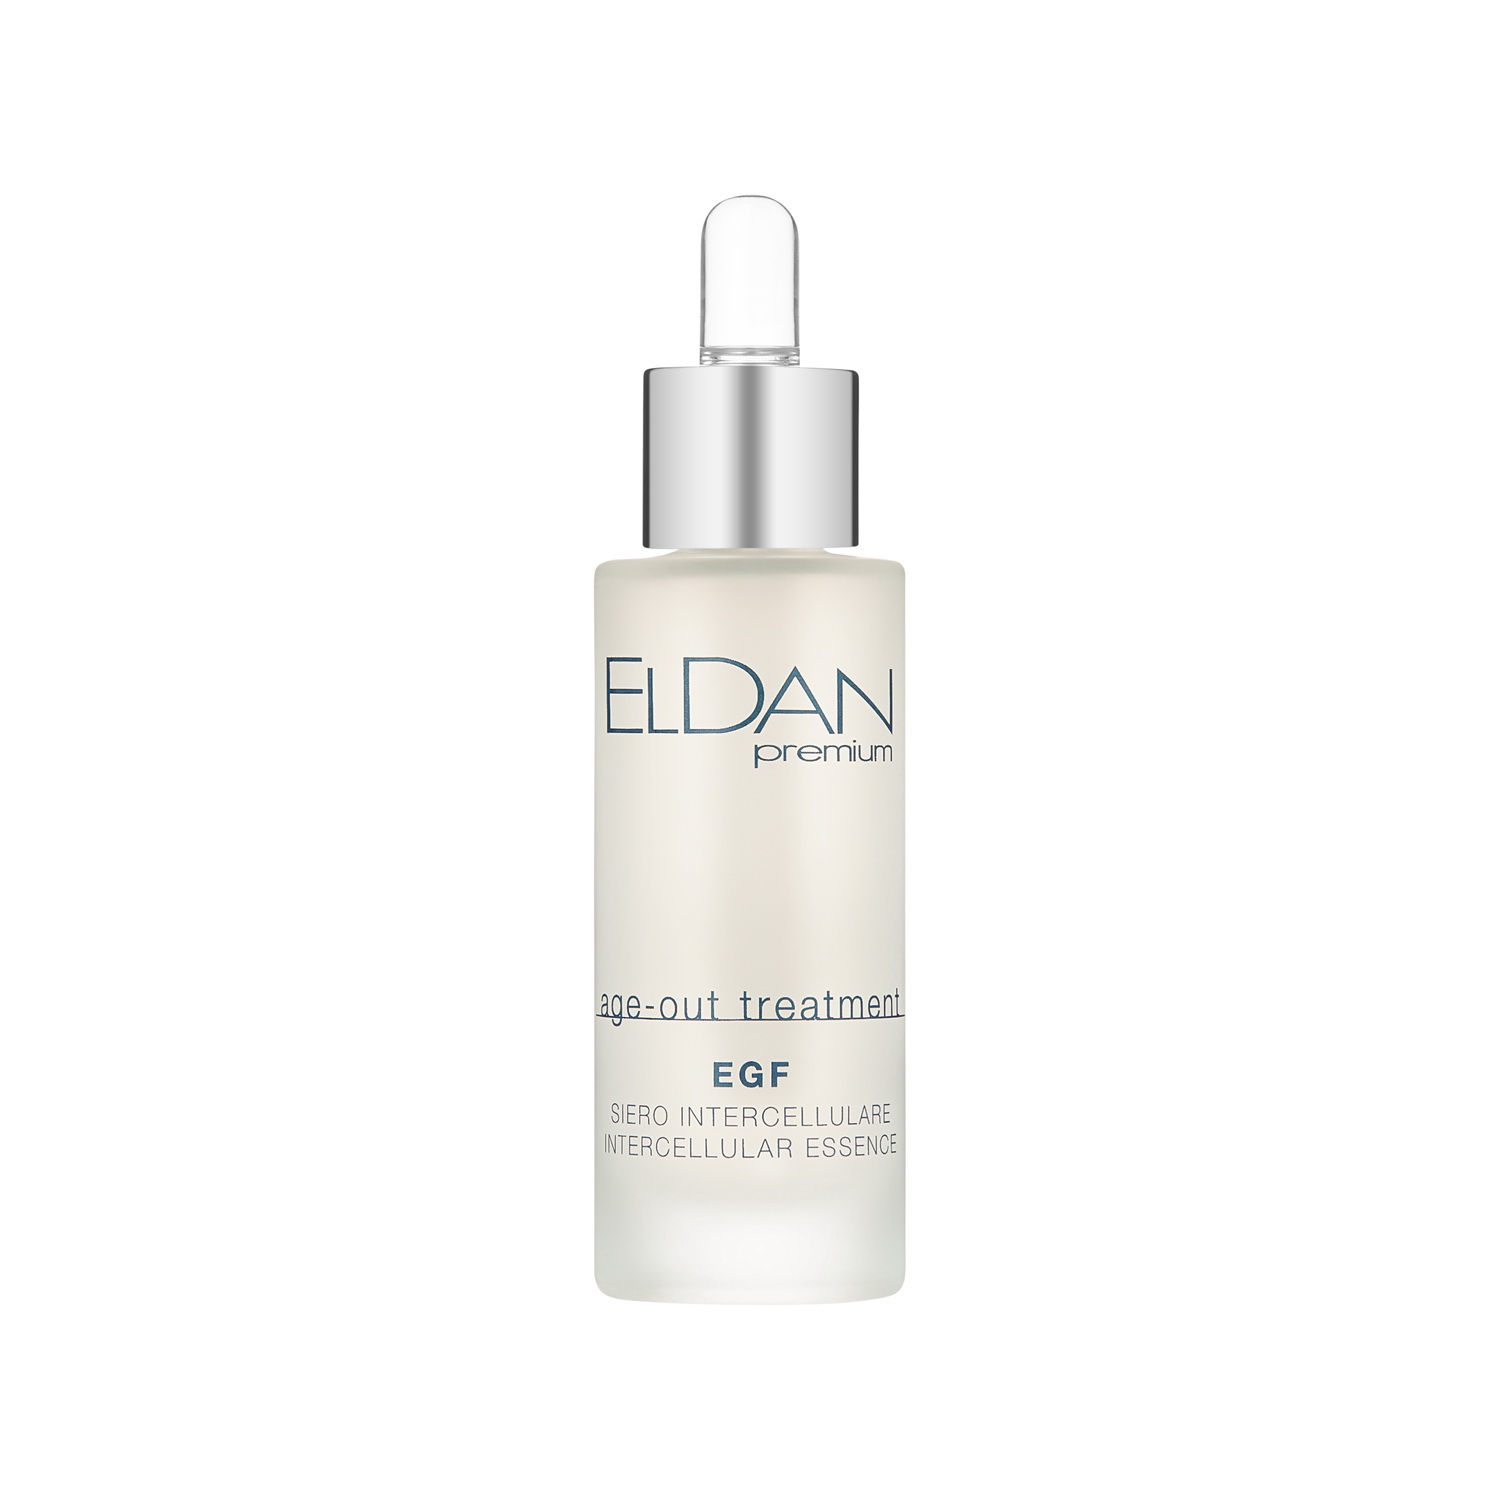 Сыворотка для лица Eldan Cosmetics EGF Intercellular Essence регенерирующая, 30 мл ovisolio крем для лица коллагеновый дневной ванильная карамель овечье масло 150